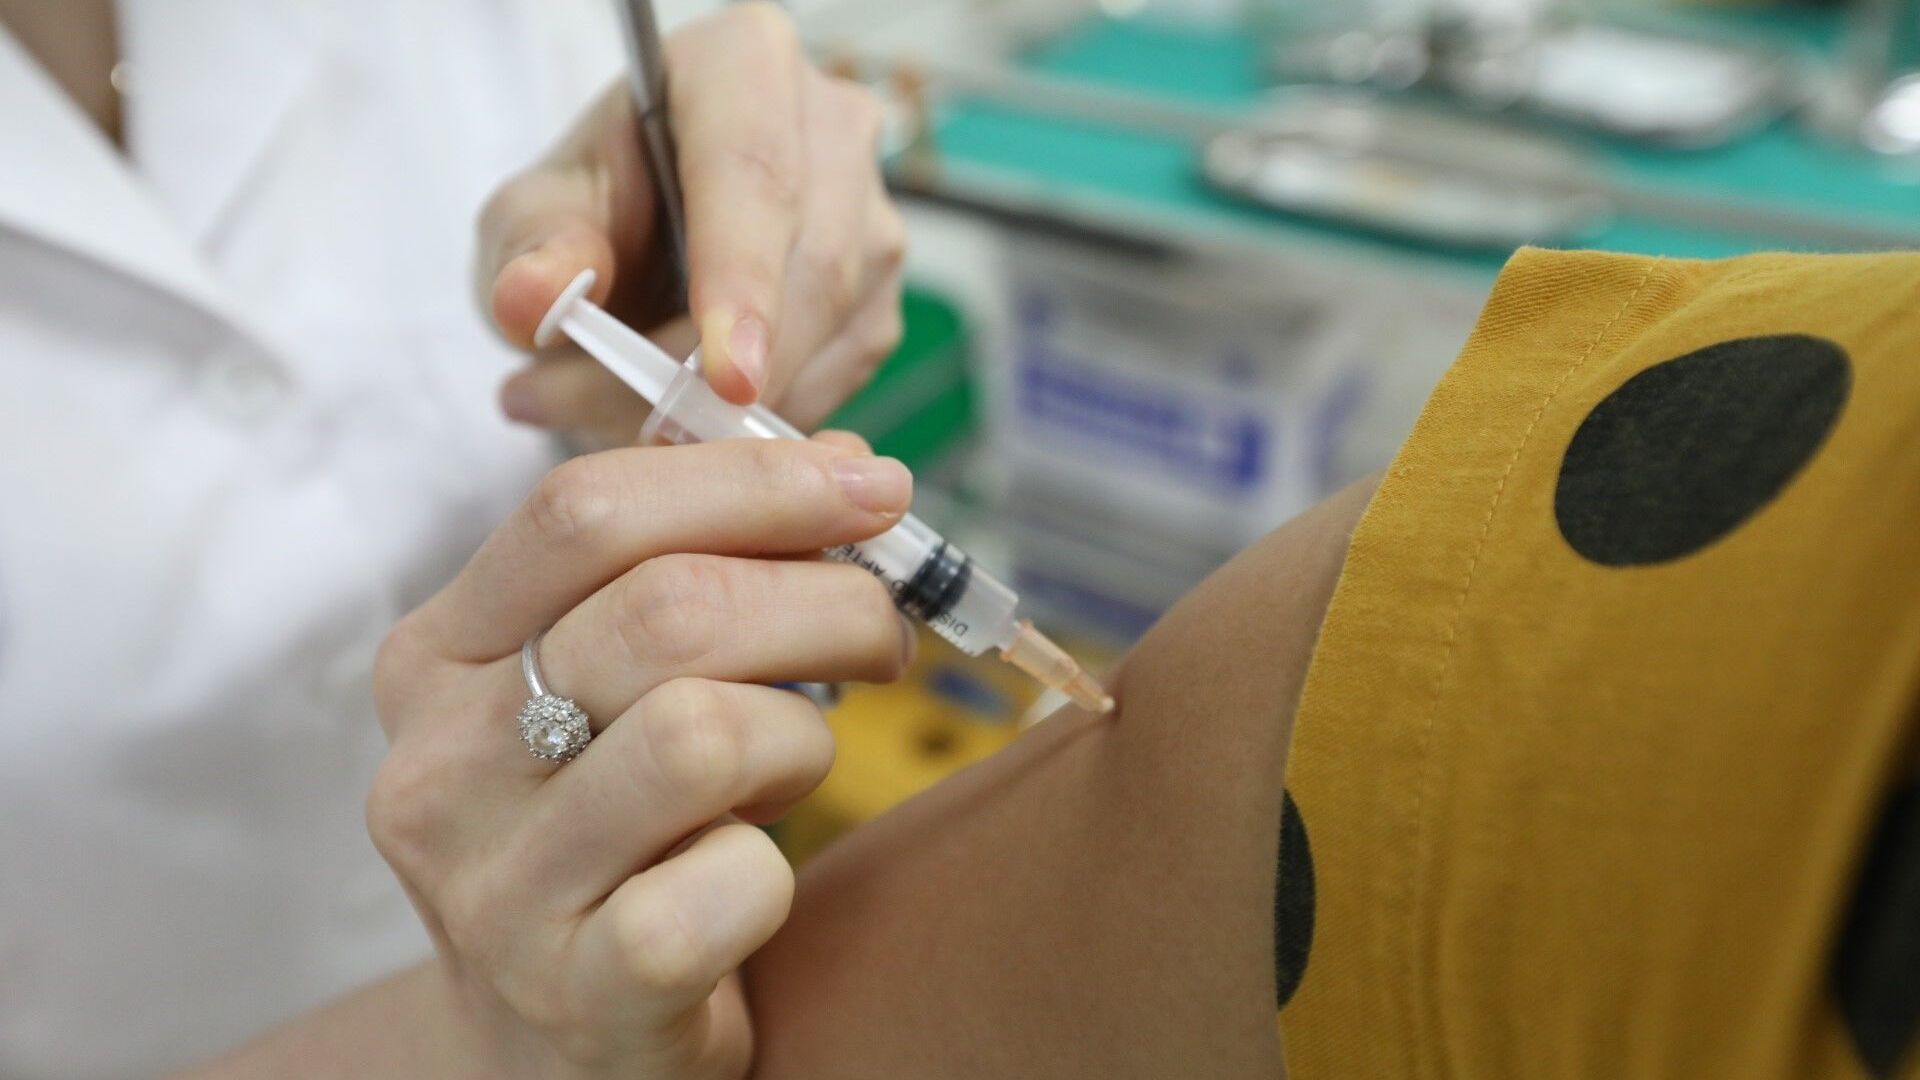 Nhân viên y tế tiêm thử nghiệm vaccine Nano Covax đợt 1, giai đoạn 3 cho tình nguyện viên tại Học viện Quân y. - Sputnik Việt Nam, 1920, 28.06.2021